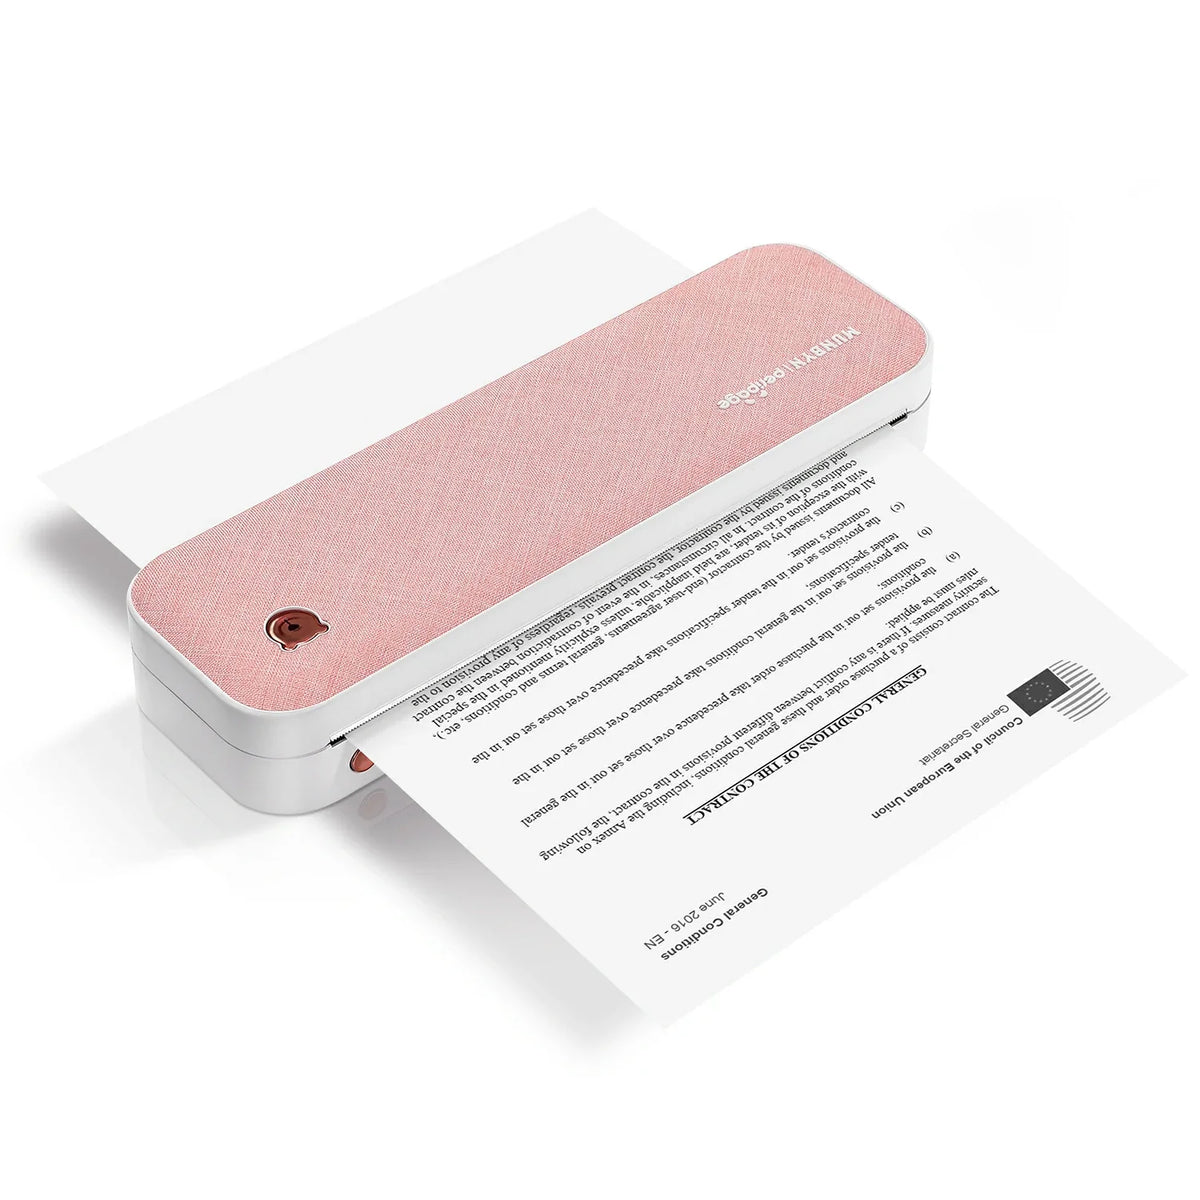 Der tragbare A4-Thermodrucker von MUNBYN ist in den Farben Rosa, Grau und Grün verfügbar.